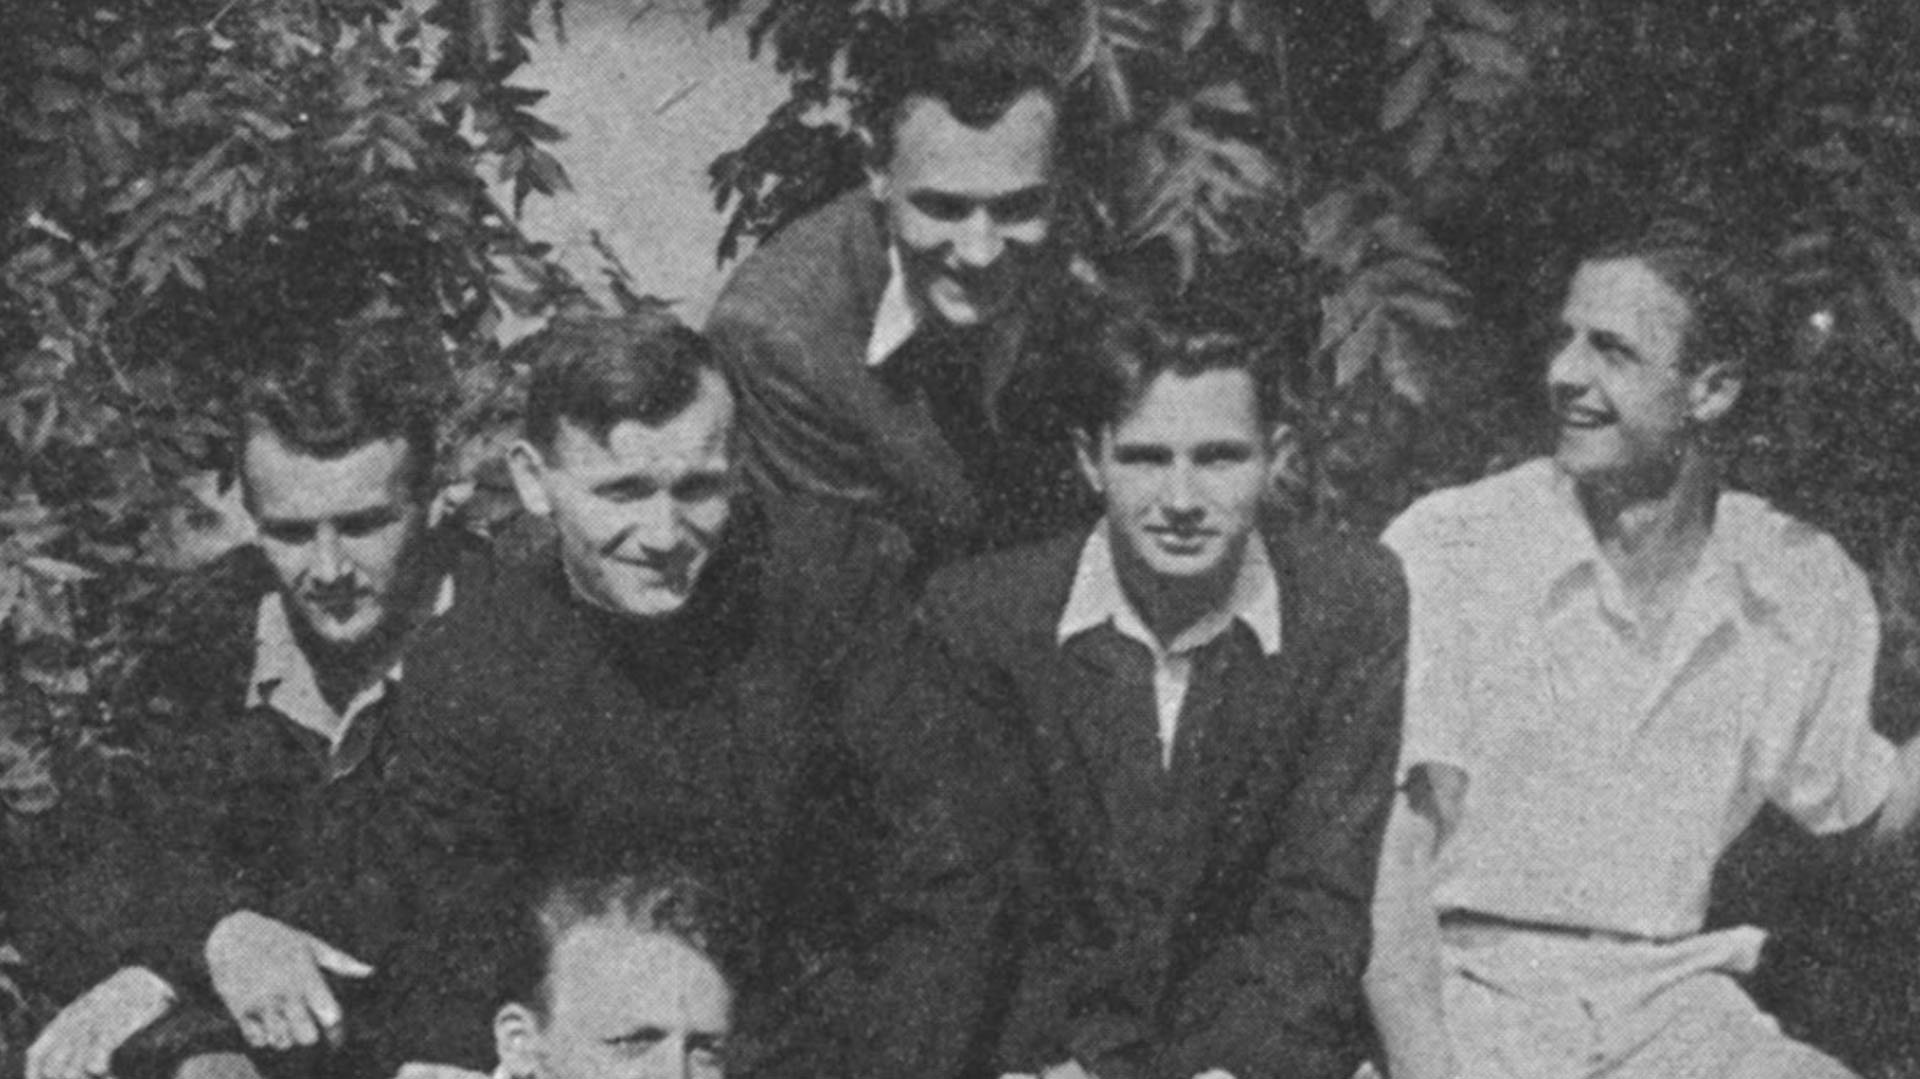 Joven seminarista. Karol Wojtyla es el segundo desde la izquierda